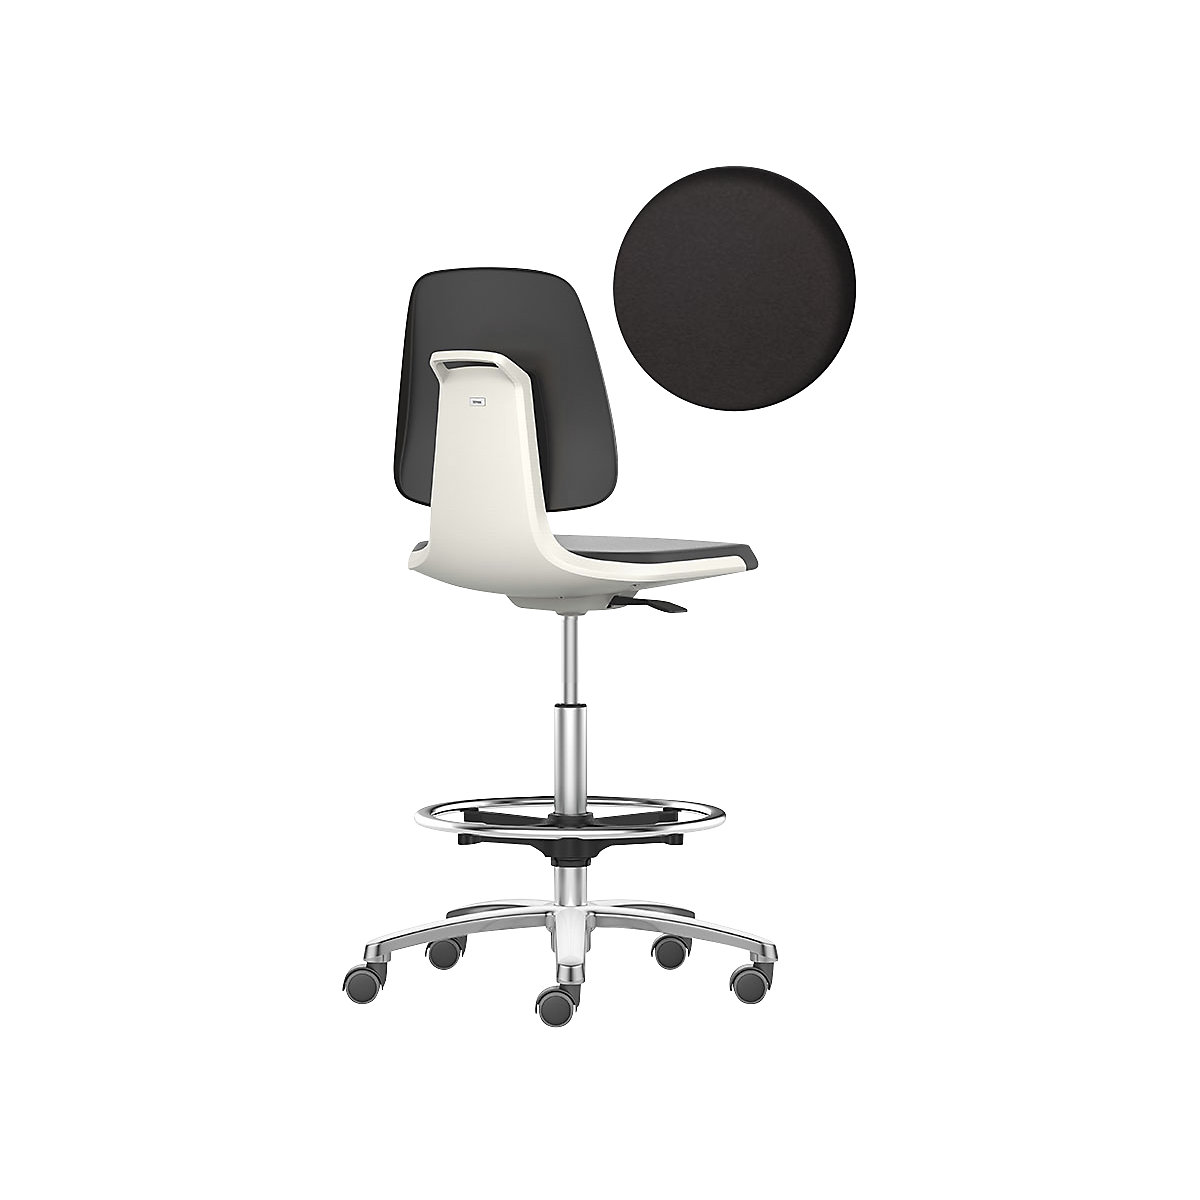 bimos – Siège d'atelier LABSIT, siège haut avec roulettes blocables et repose-pieds circulaire, assise à habillage similicuir, blanc